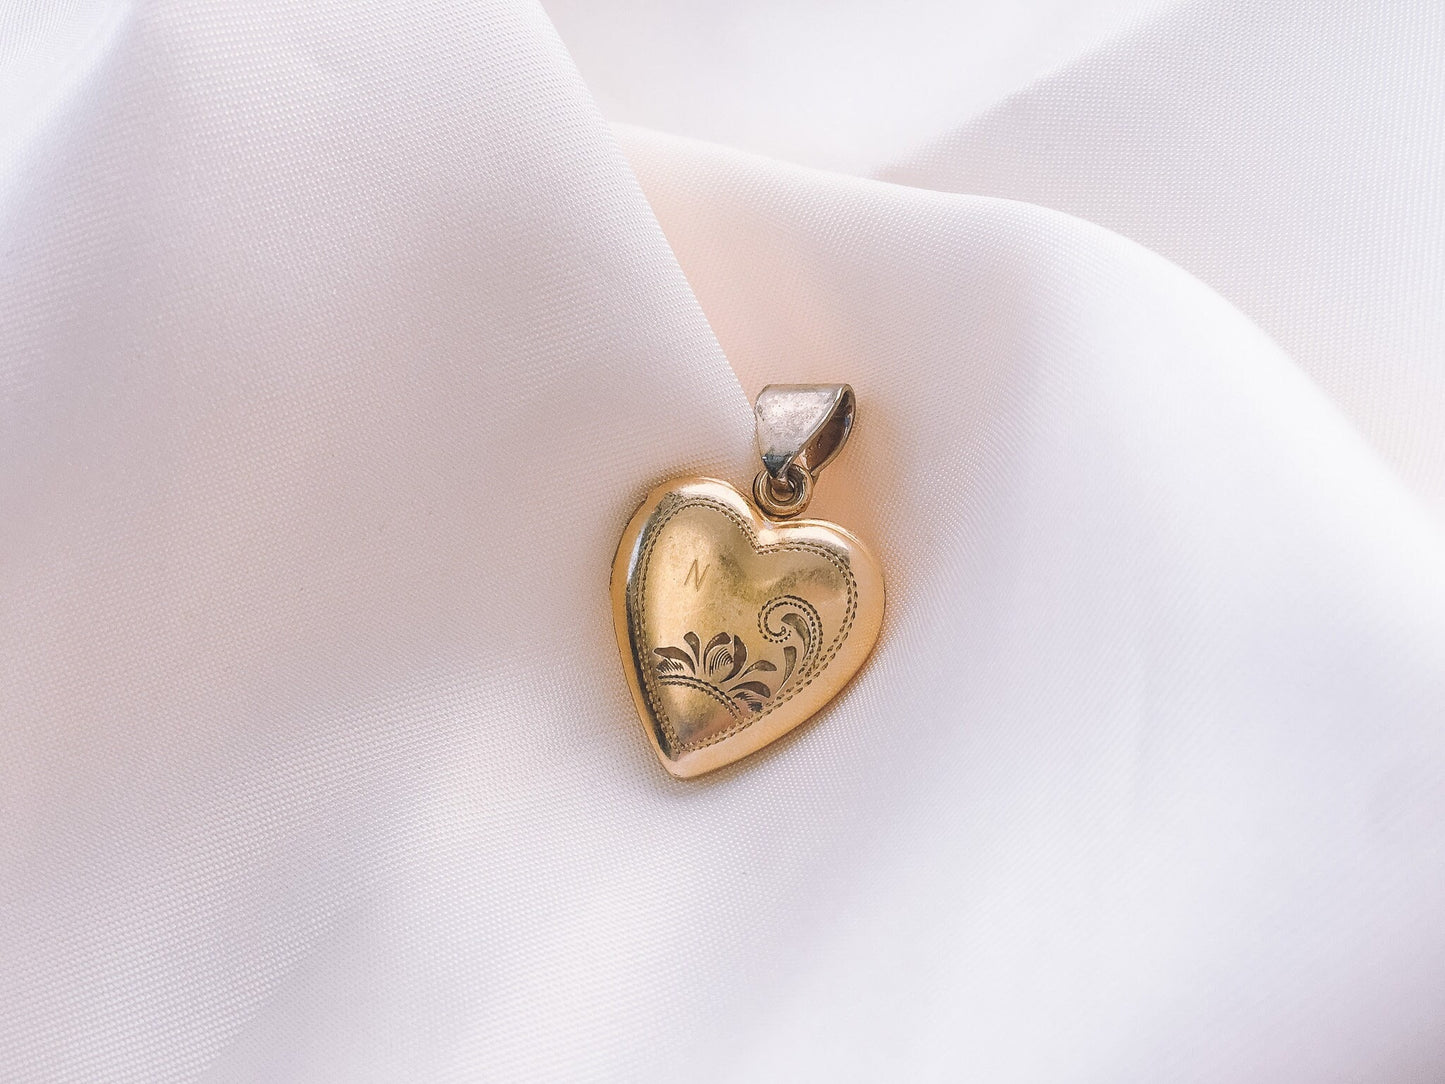 Vintage Vargas 10k Gold Filled Heart Shaped Locket with Sterling Trimming, Art Deco Locket, Locket Only